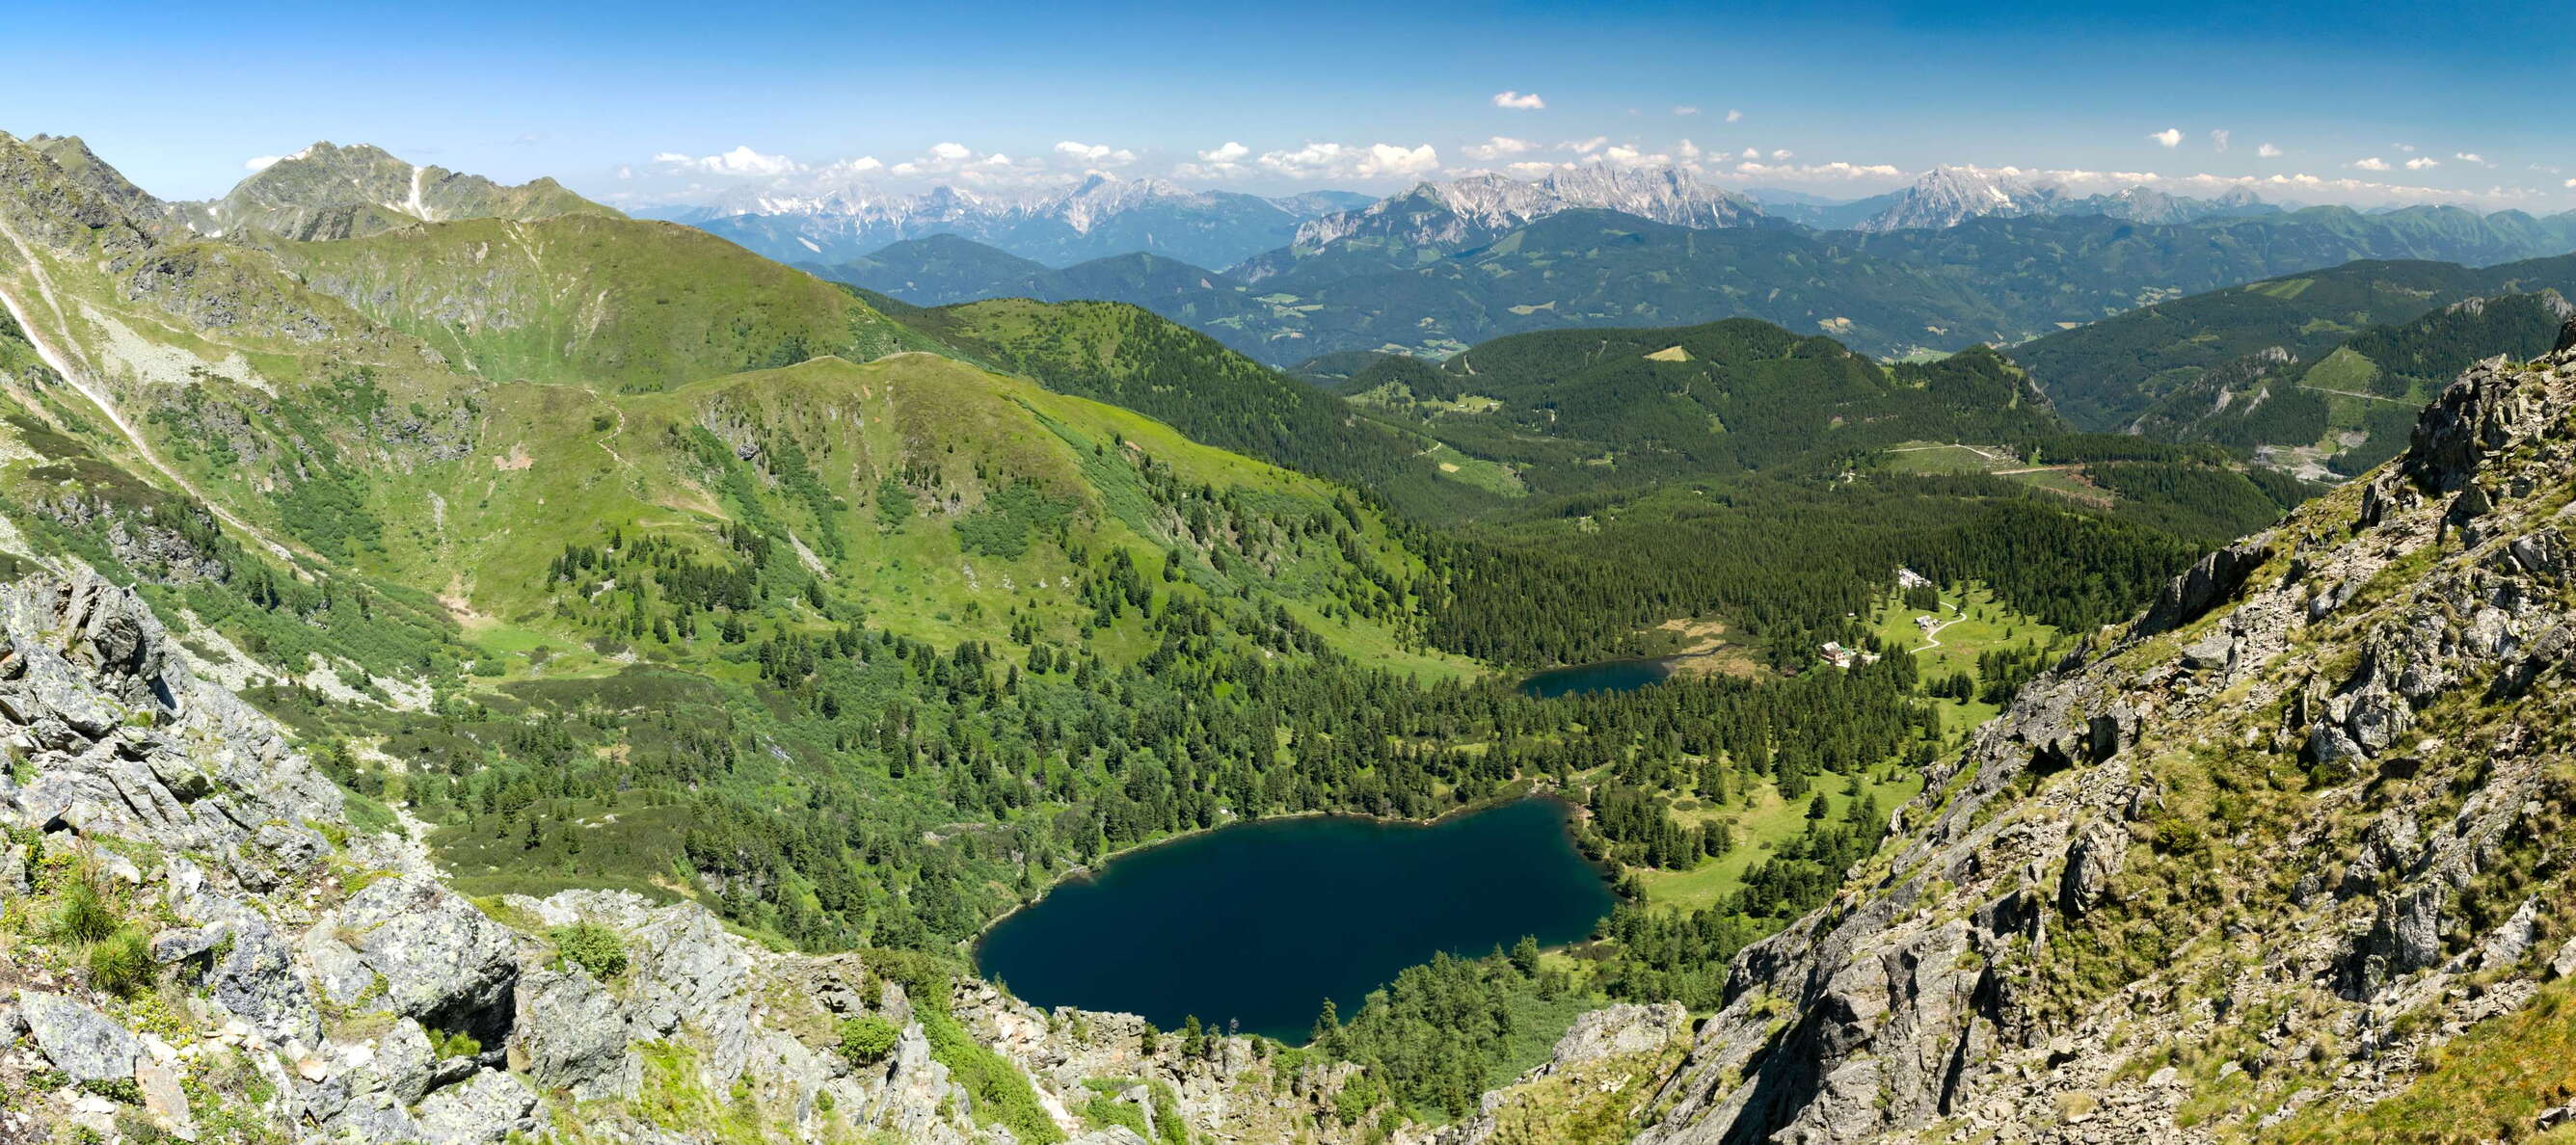 Rottenmann Tauern with Scheibel Lakes